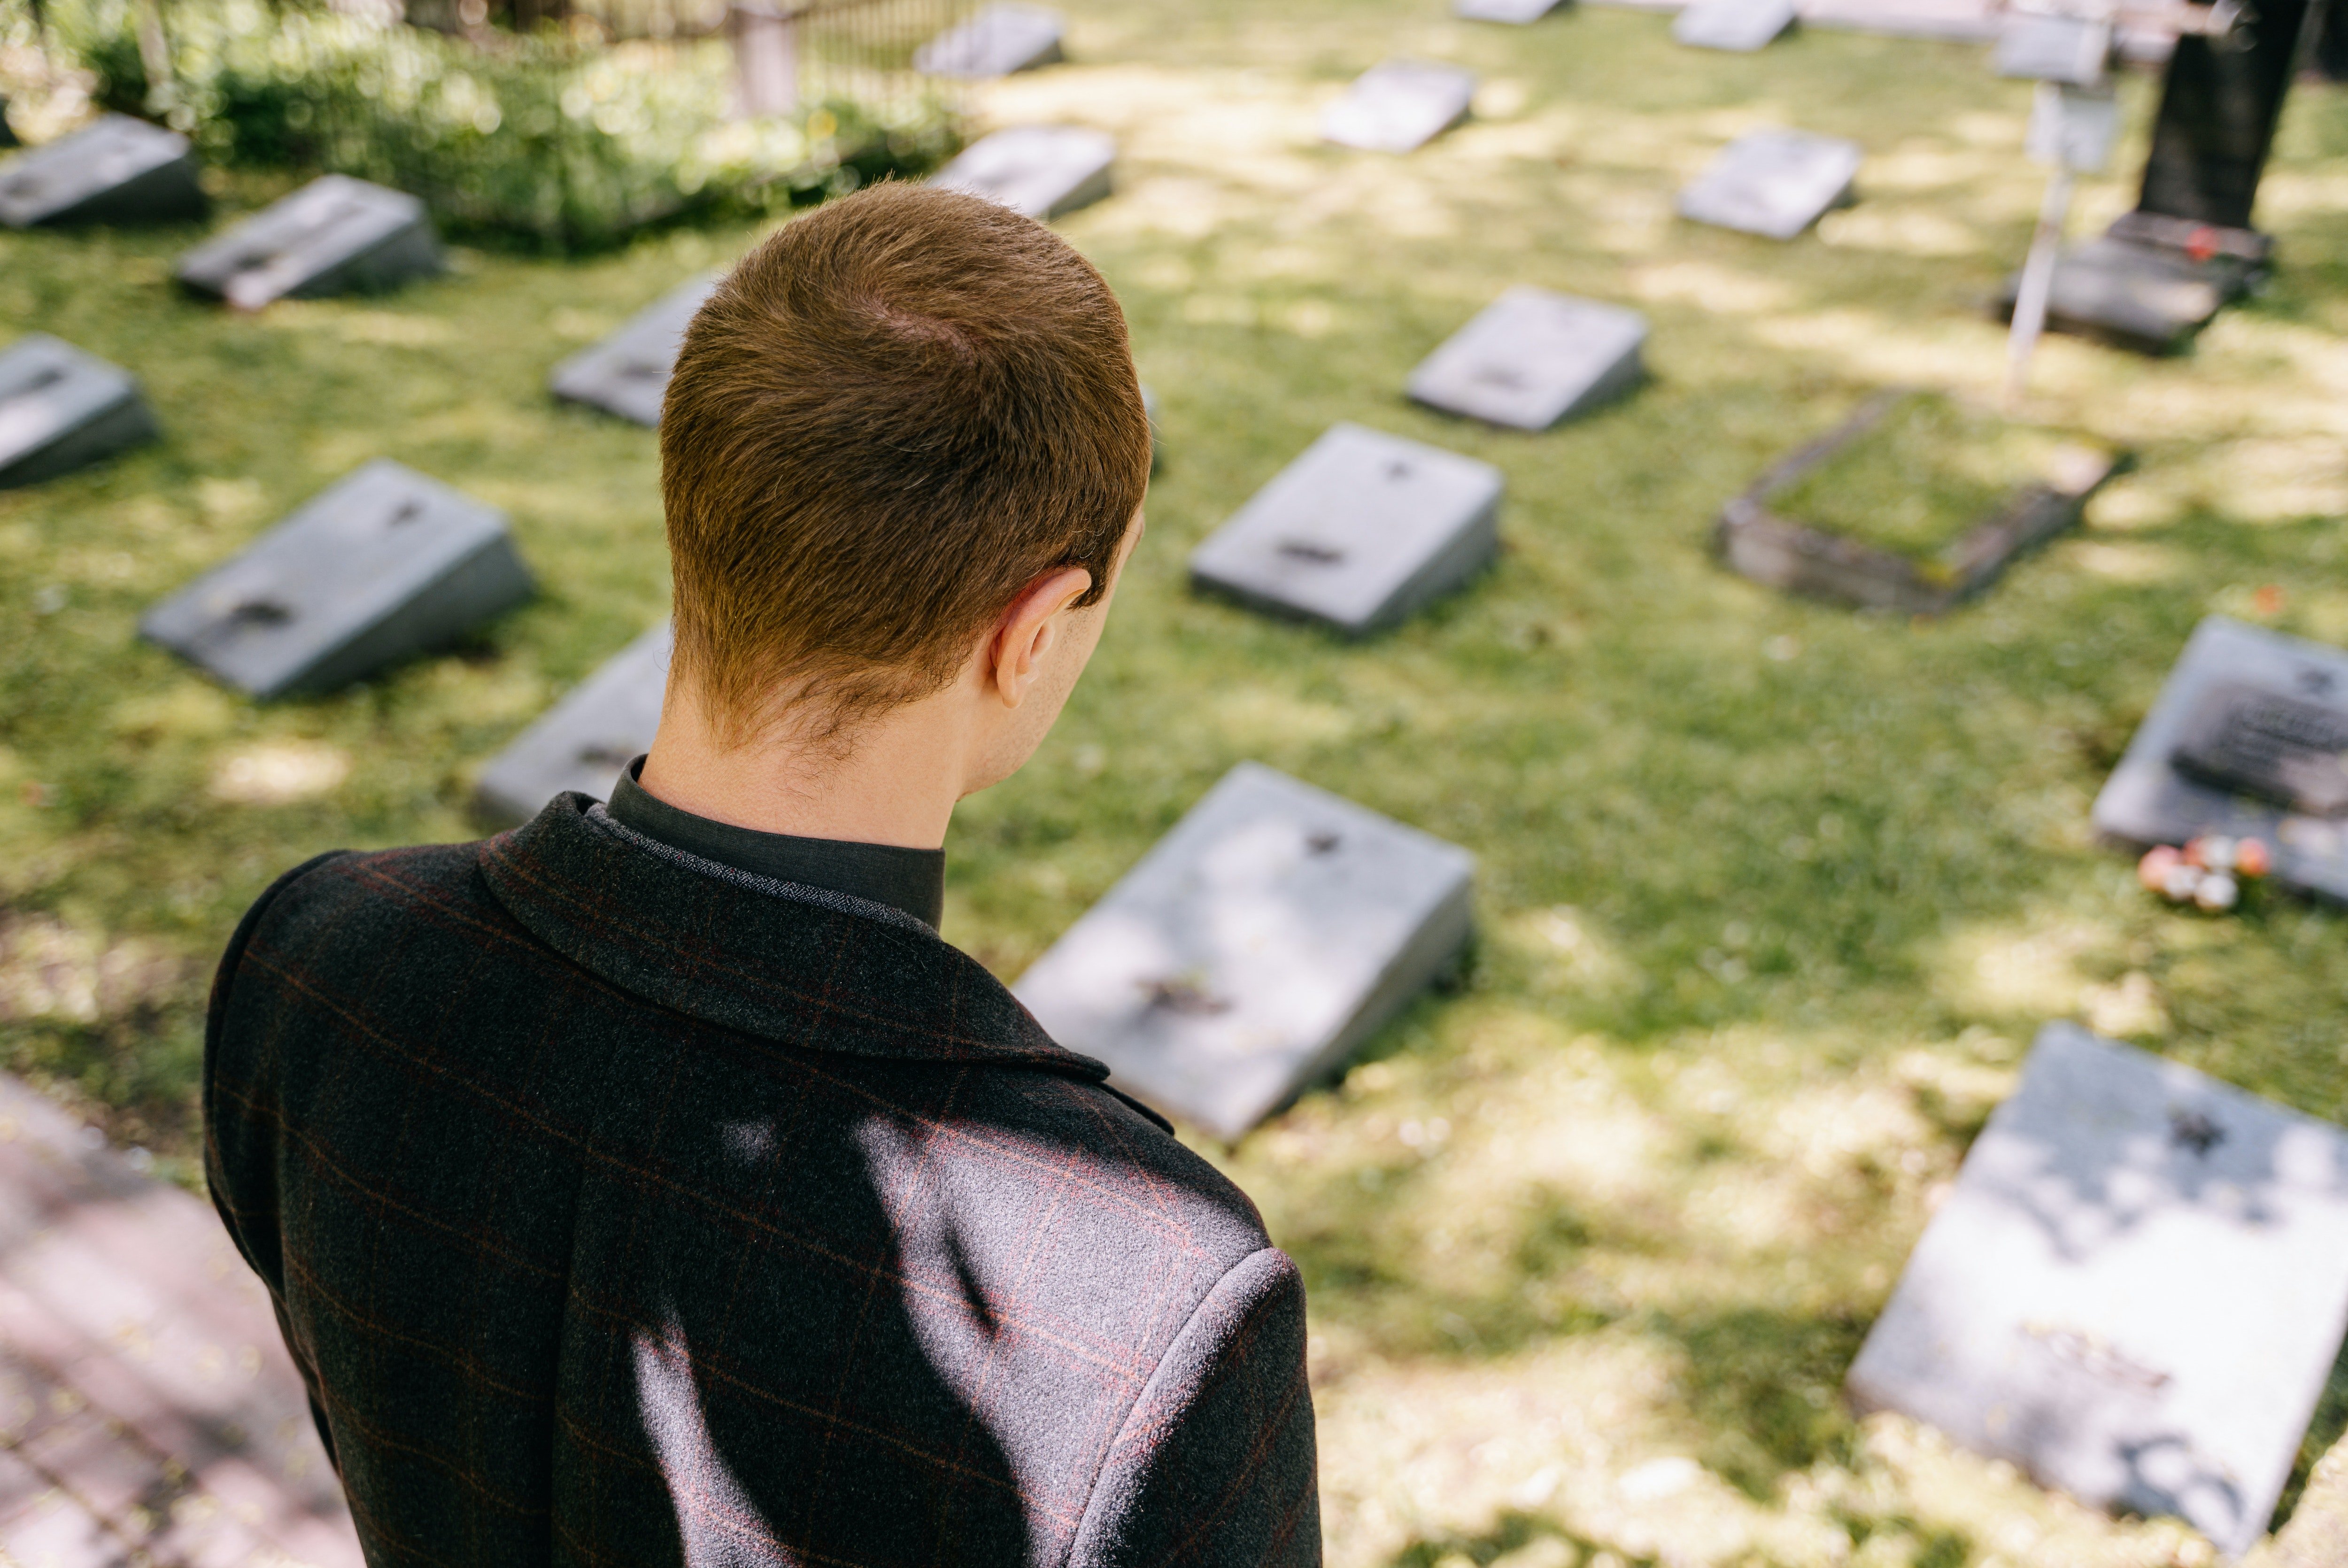 Auch 10 Jahre später konnte Todd nicht über den Tod seines Vaters hinwegkommen und er vermisste ihn. | Quelle: Pexels